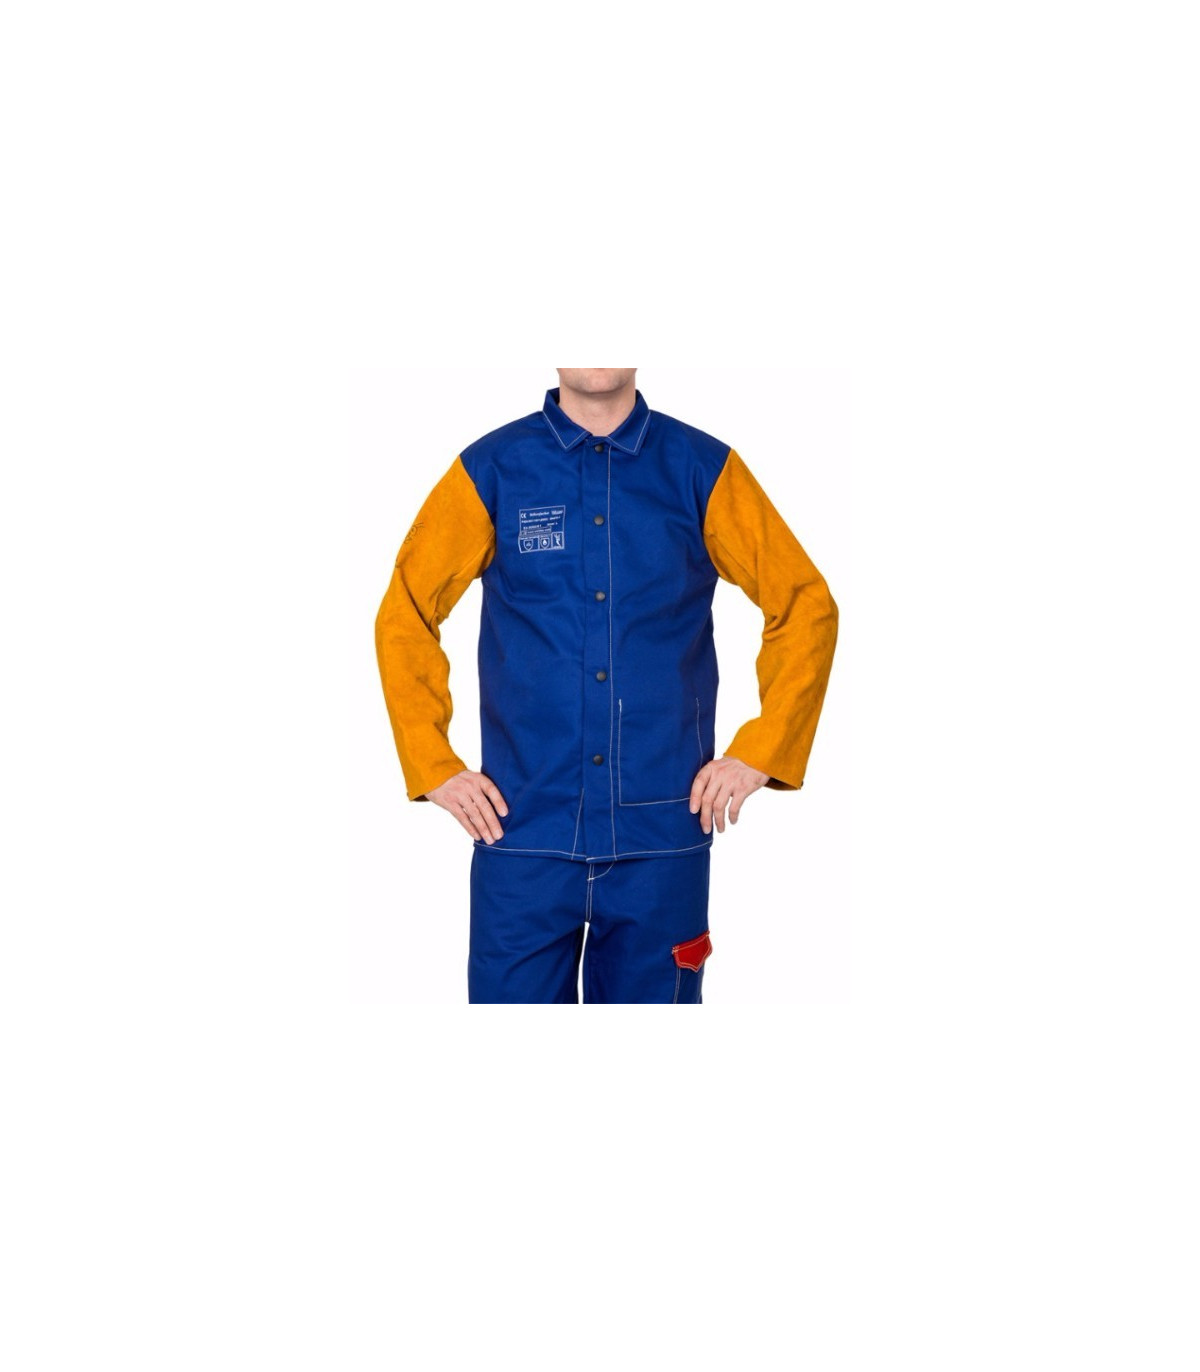 Chaqueta para soldador azul ignífuga con en cuero WELDAS Yellowjacket, comprar online